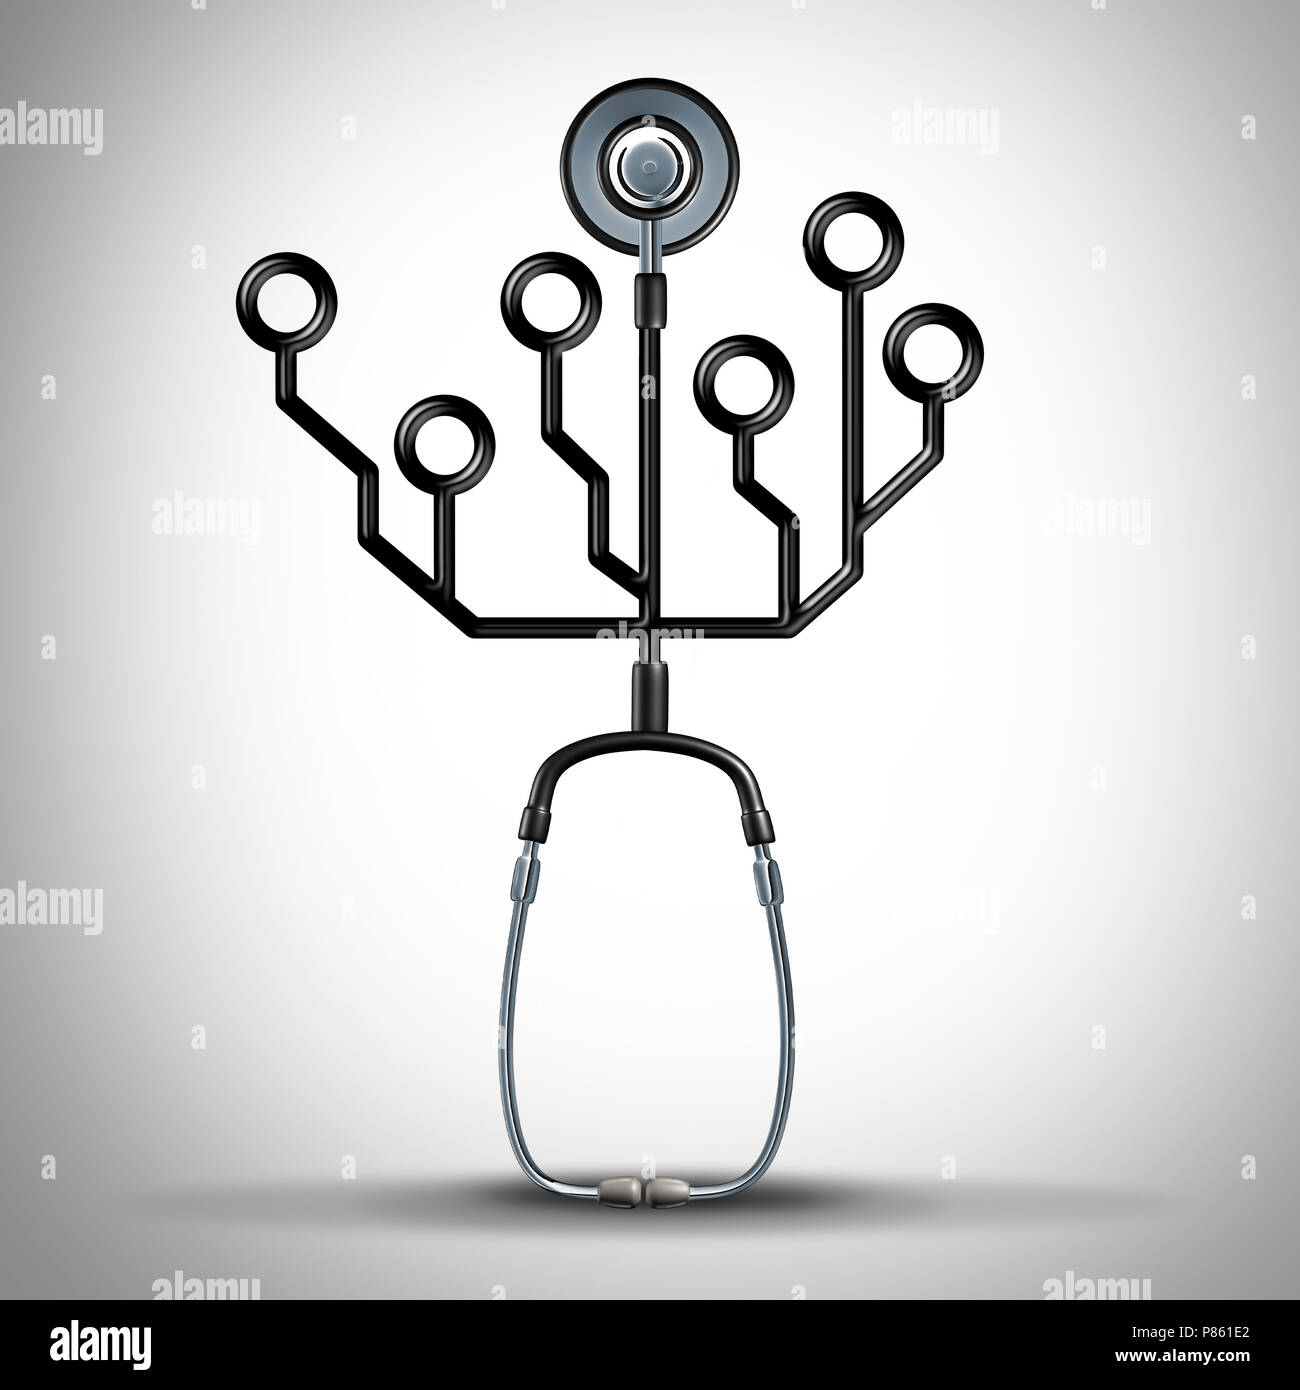 La tecnologia della medicina e sanità digitale o di dati medici nozione come un medico stetoscopio conformata come un circuito elettronico come un 3D'illustrazione. Foto Stock